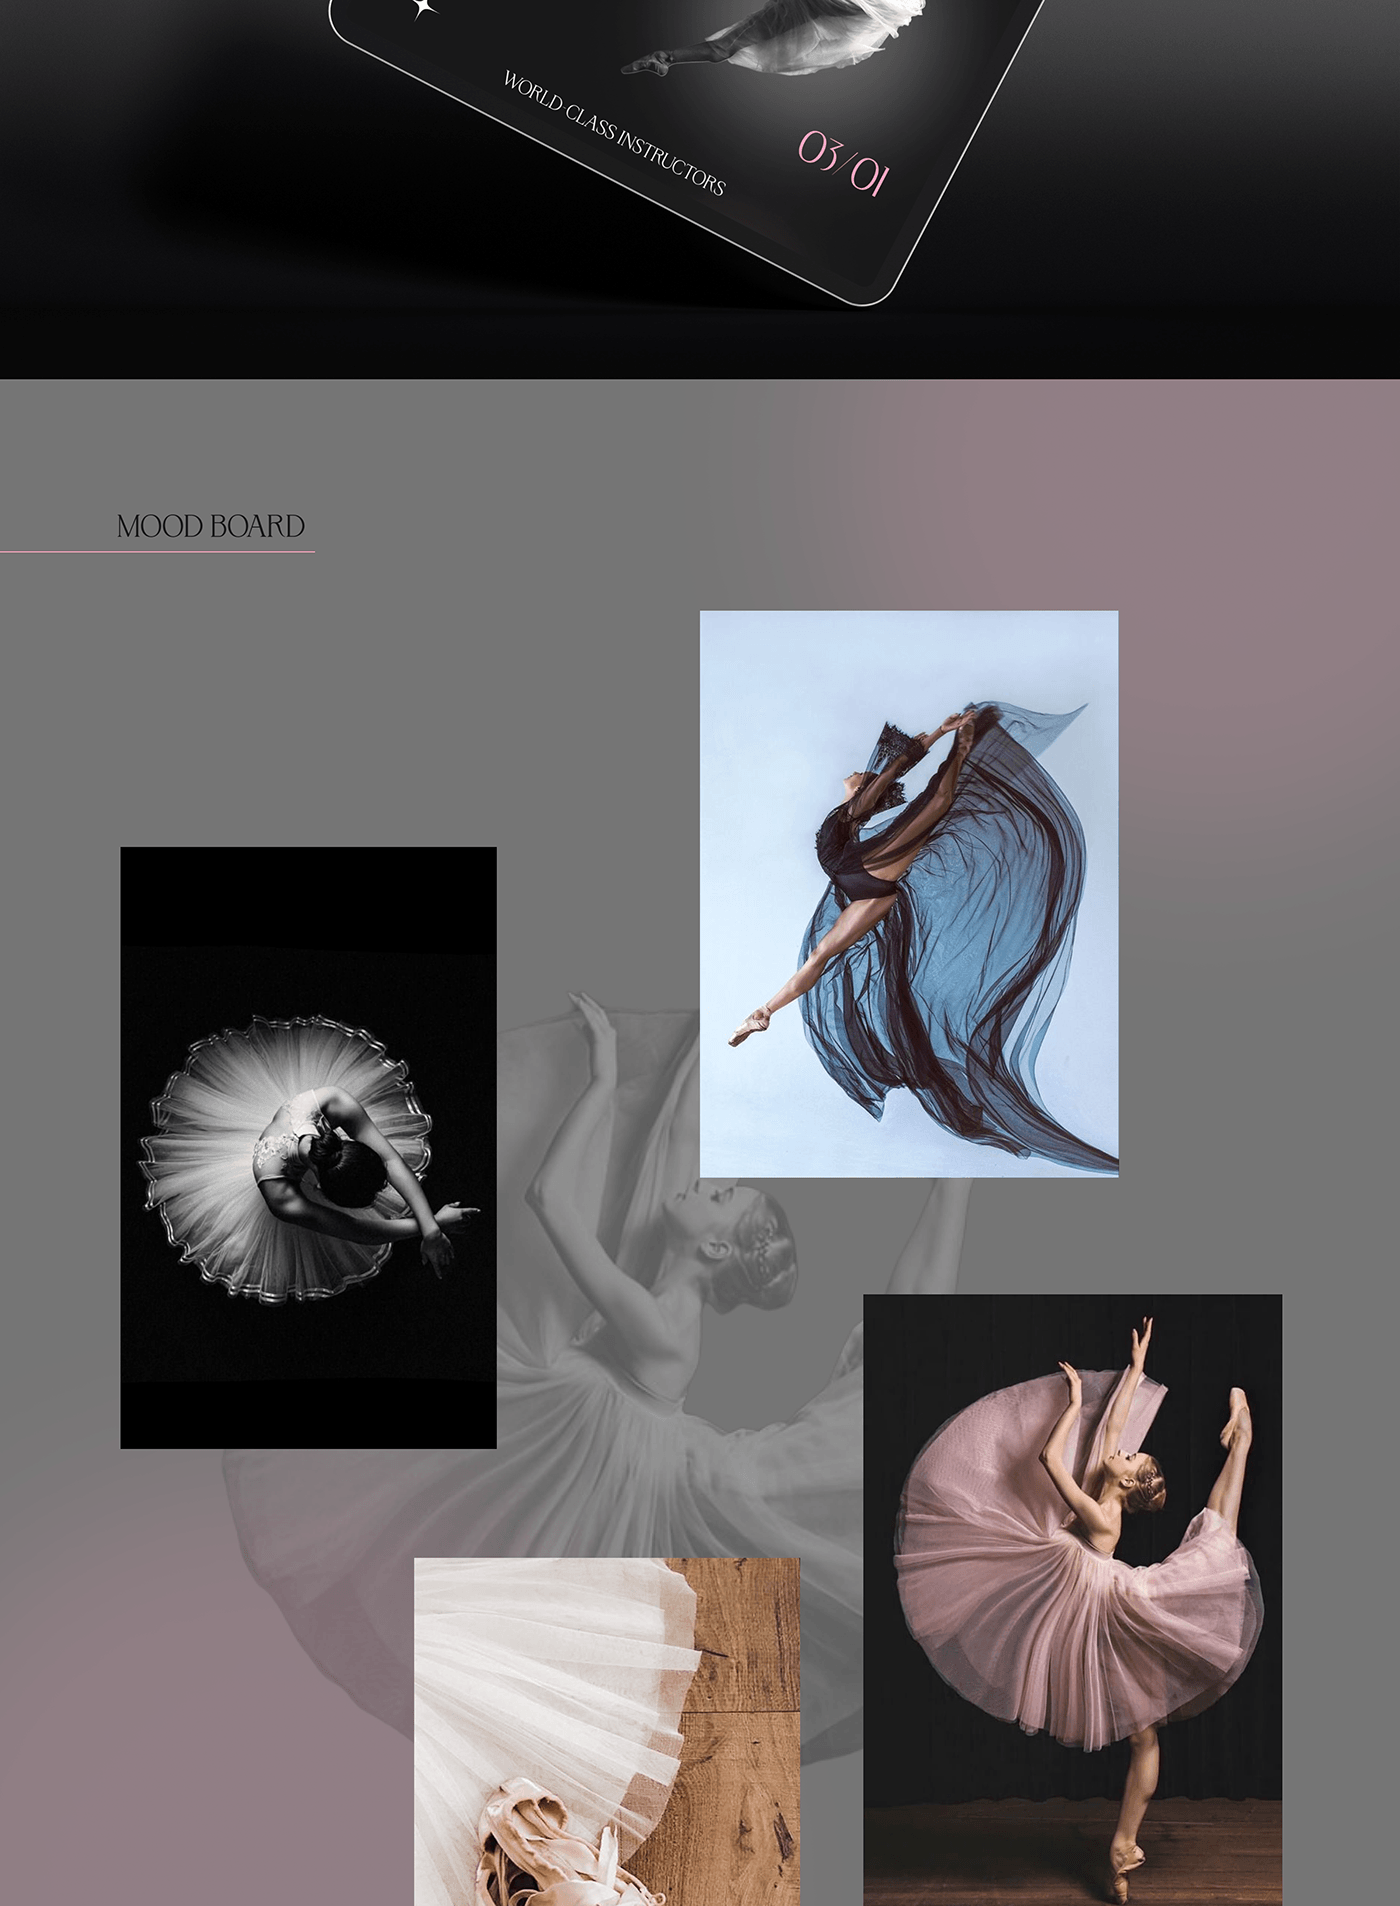 Web Design  UI/UX Website landing page dance studio landing DANCE   ballet ballerina